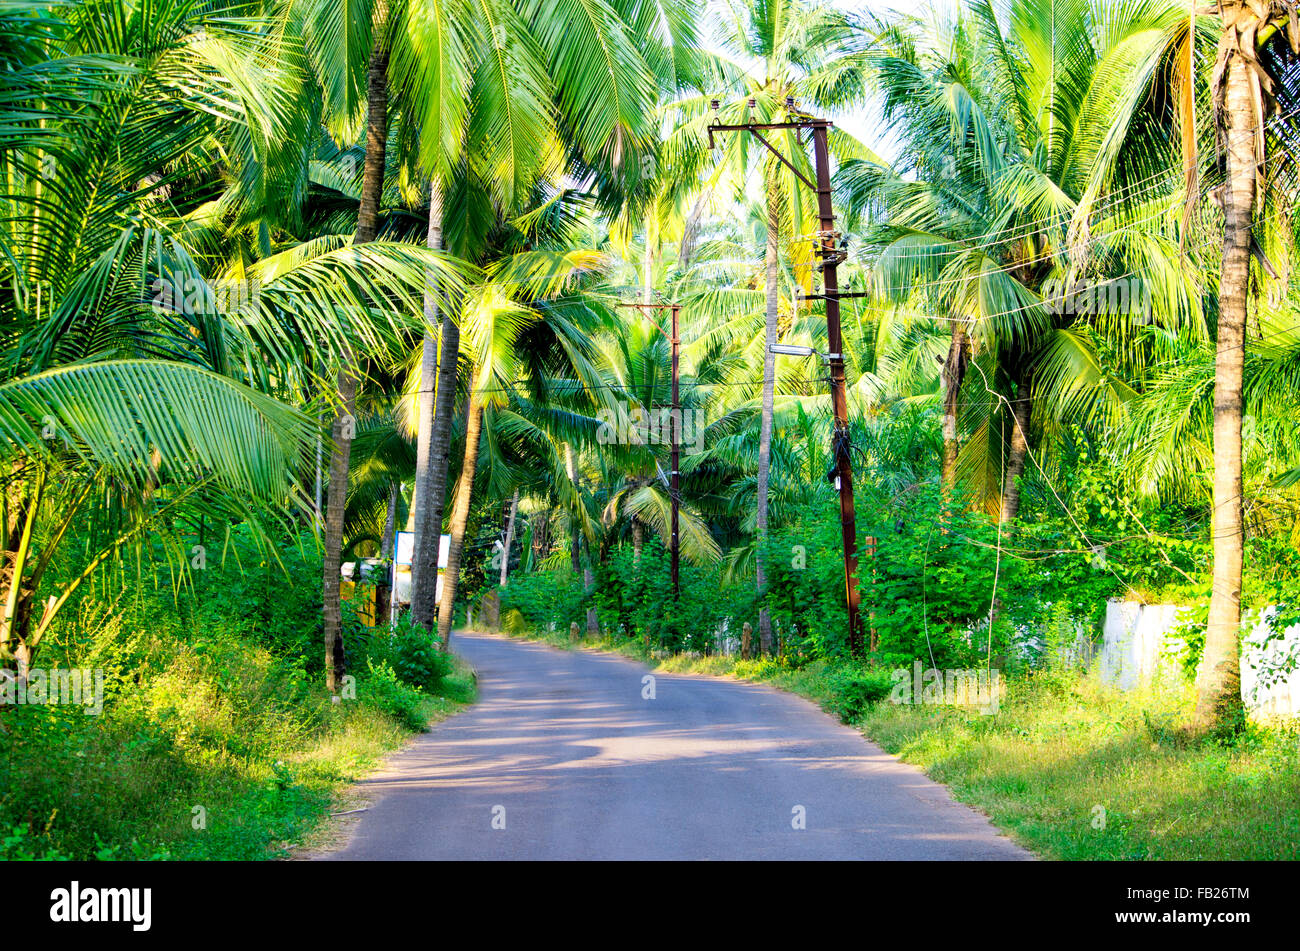 En route le village tropiques la nature,la route,la rue,la chaussée,asia,Inde,le village indien,les palmiers,la route Banque D'Images